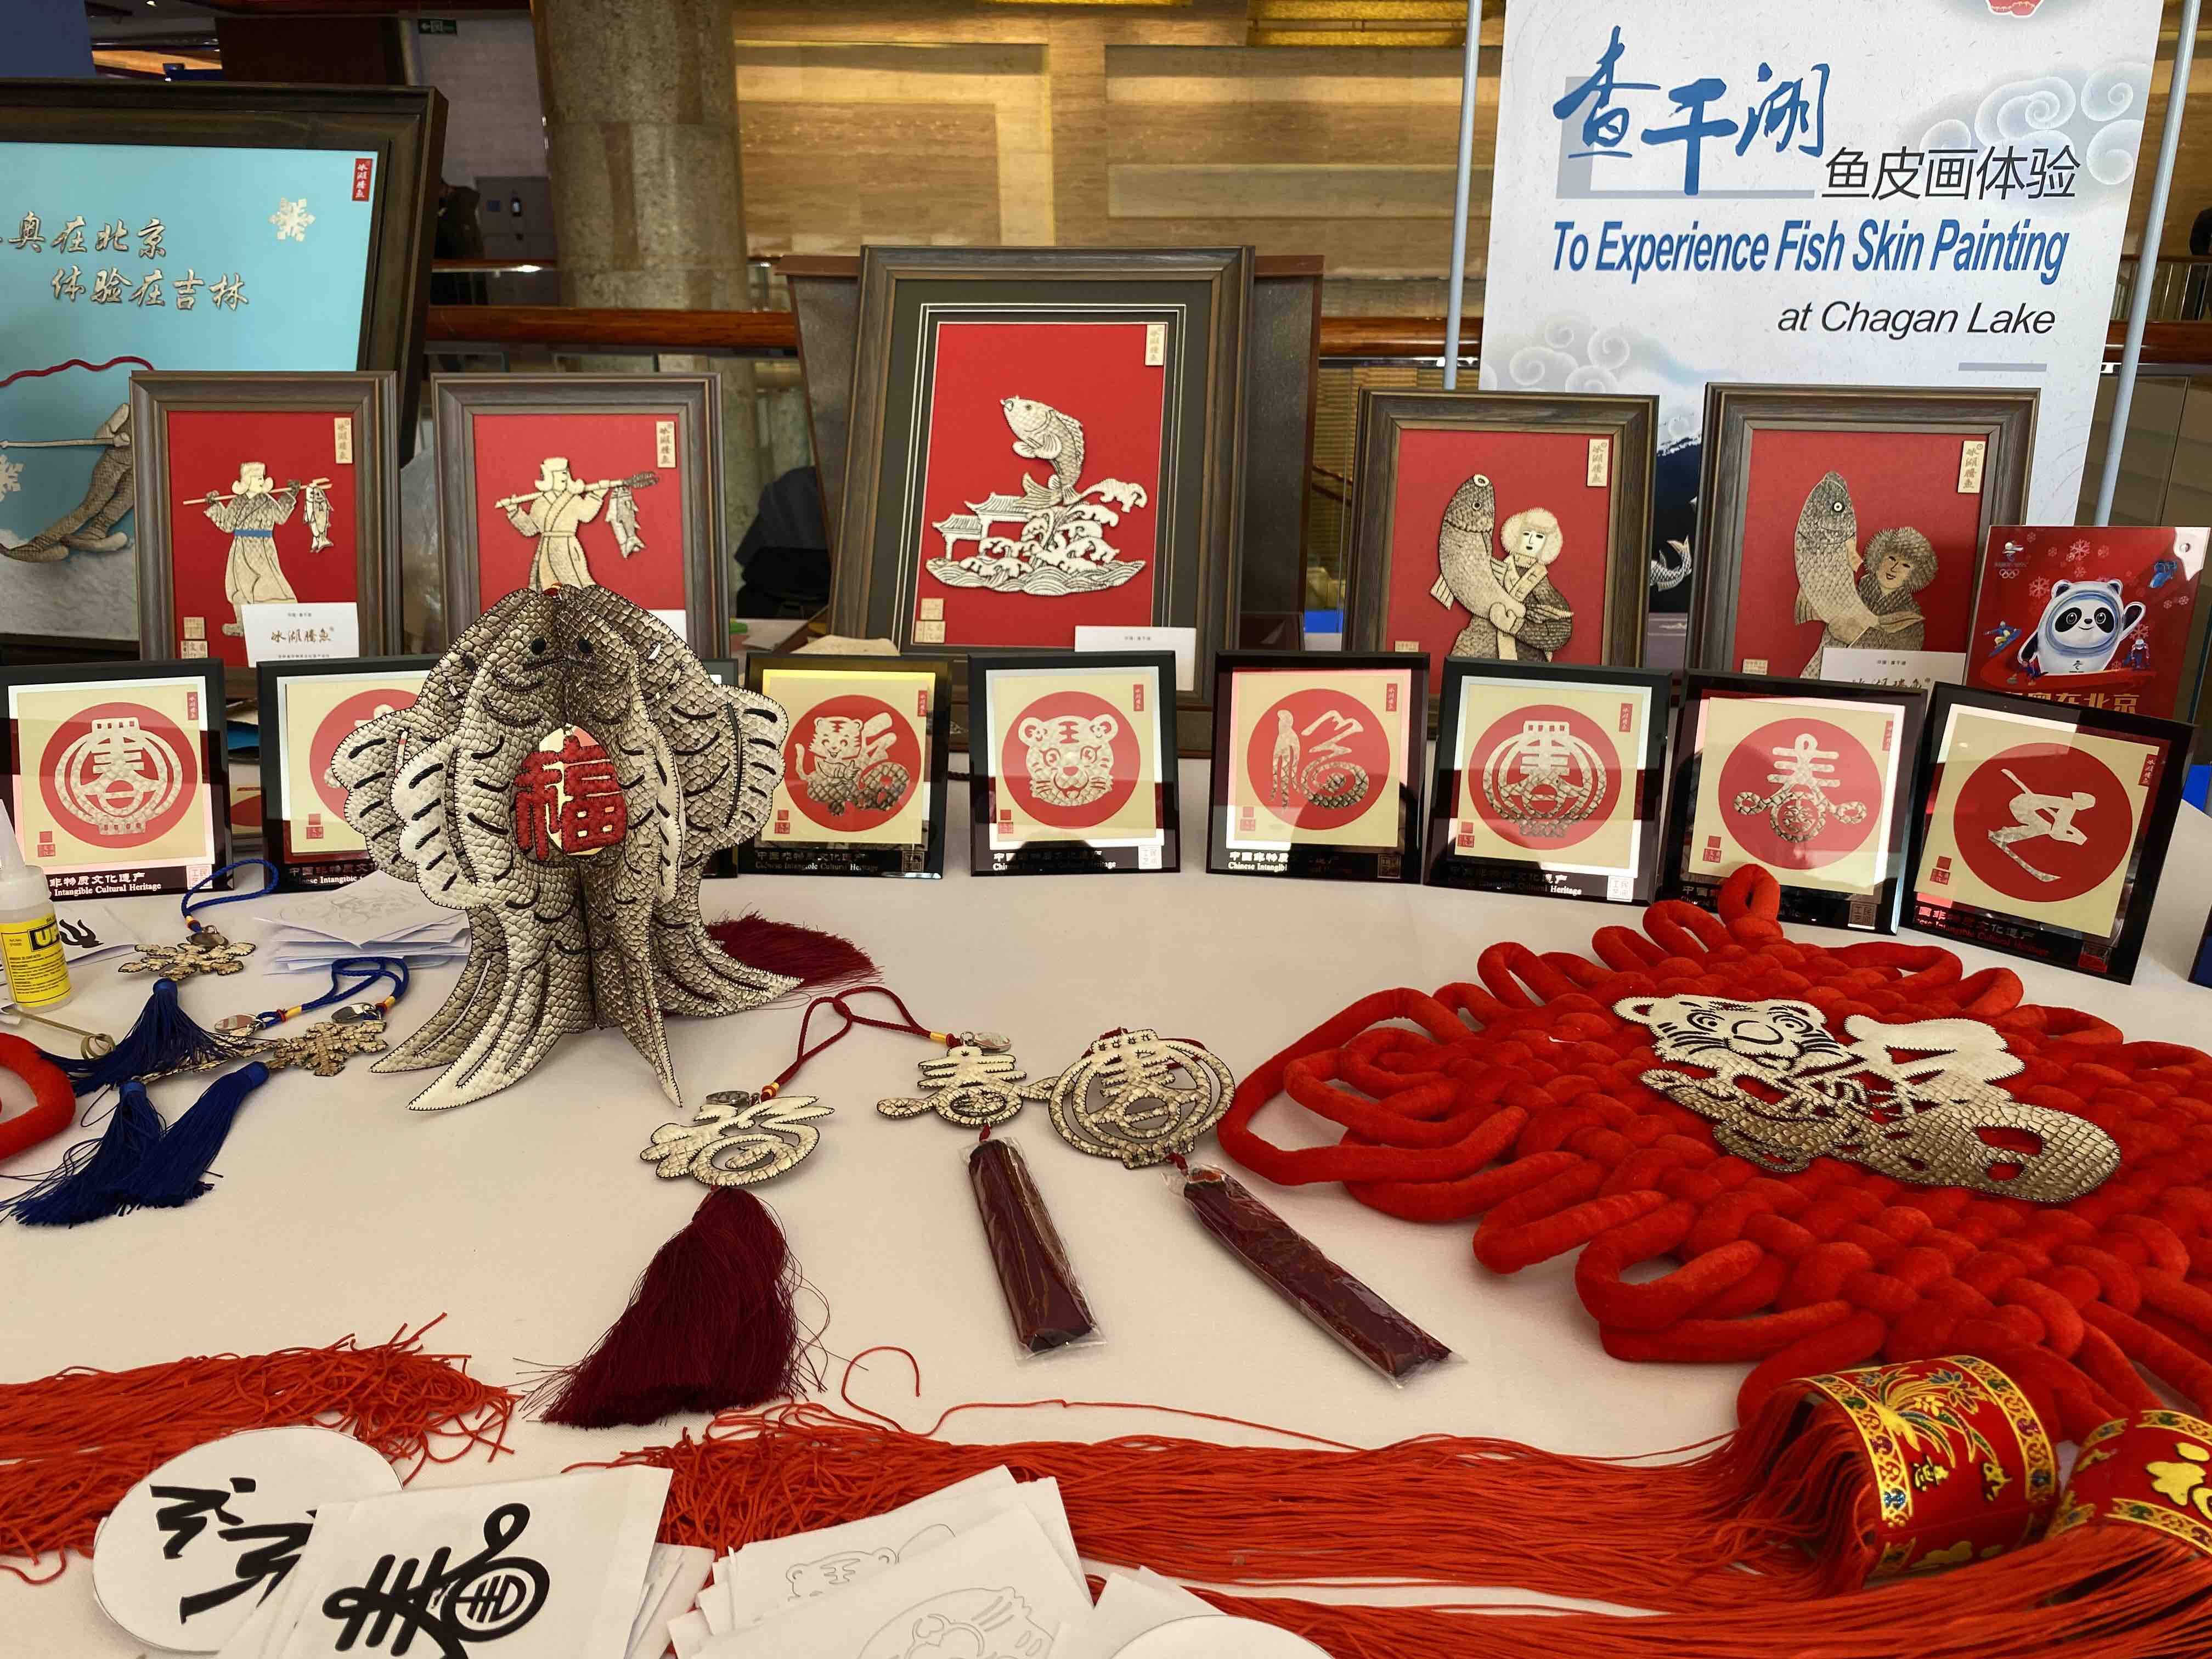 呈现不同文化魅力 2022北京新闻中心“多彩神州”展示活动精彩纷呈